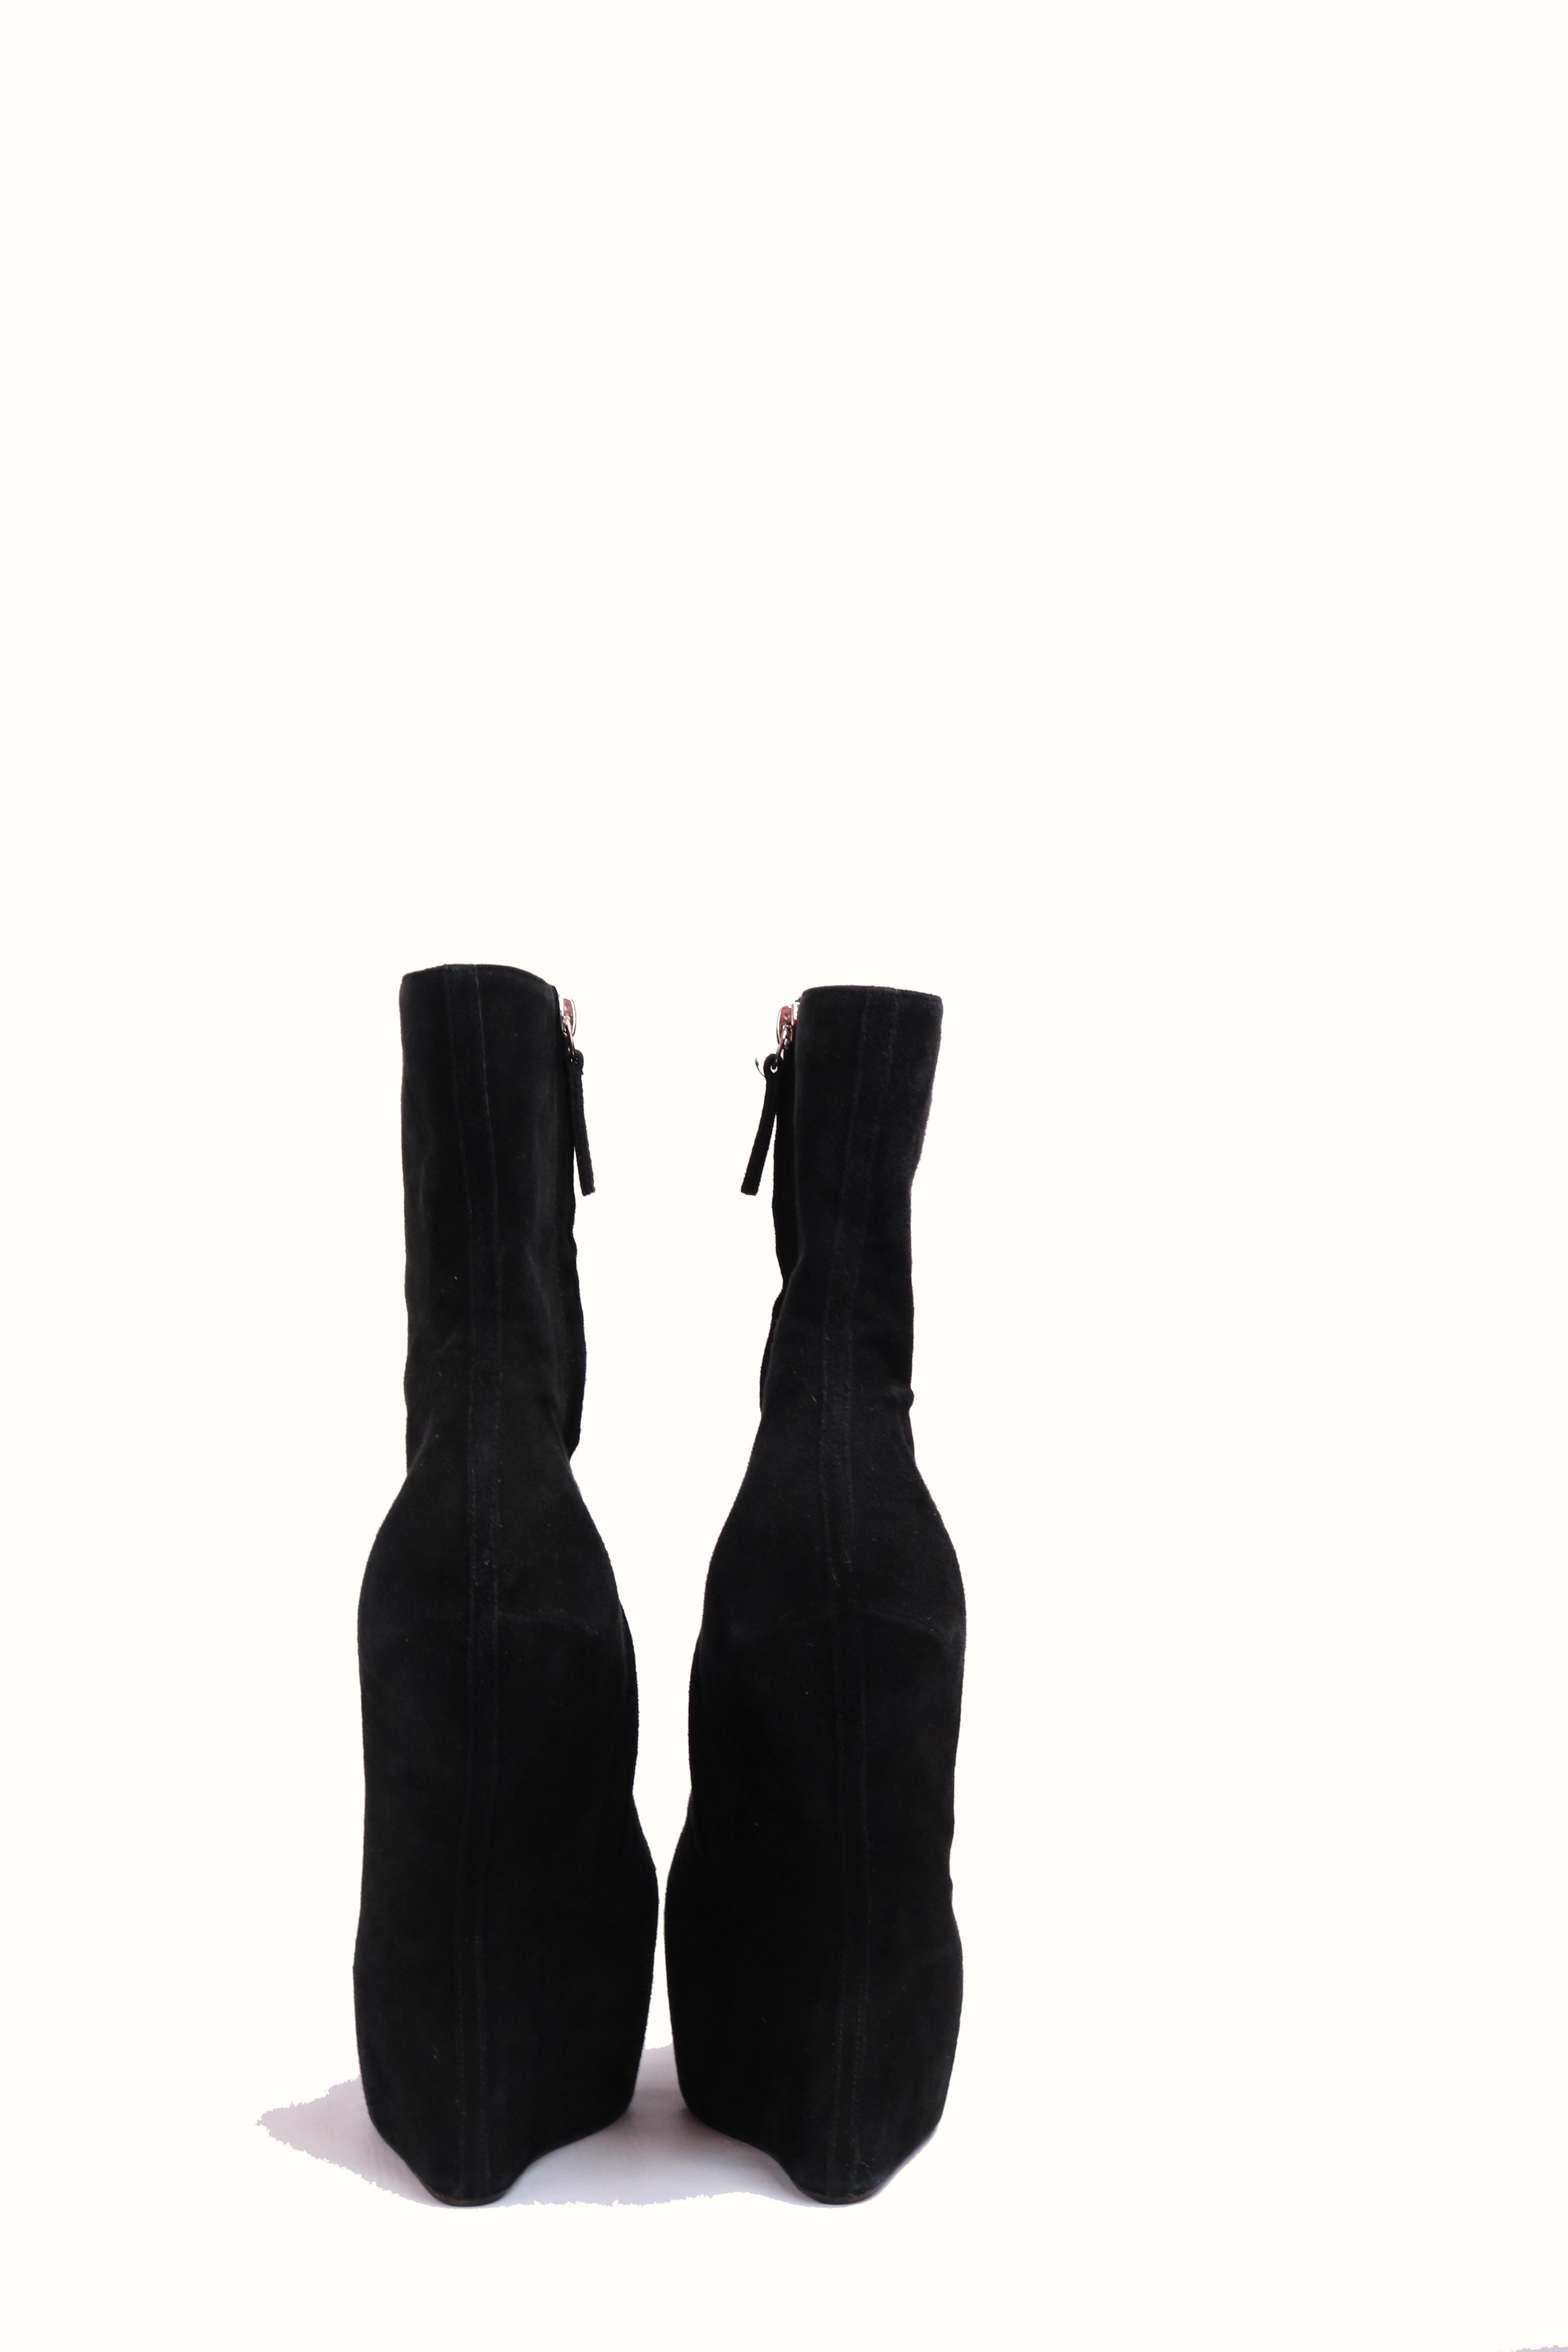 -Black Suede Curved Wedge Platform Ankle Boots
- Avante Guard - super unique!
-Size 7.5 
